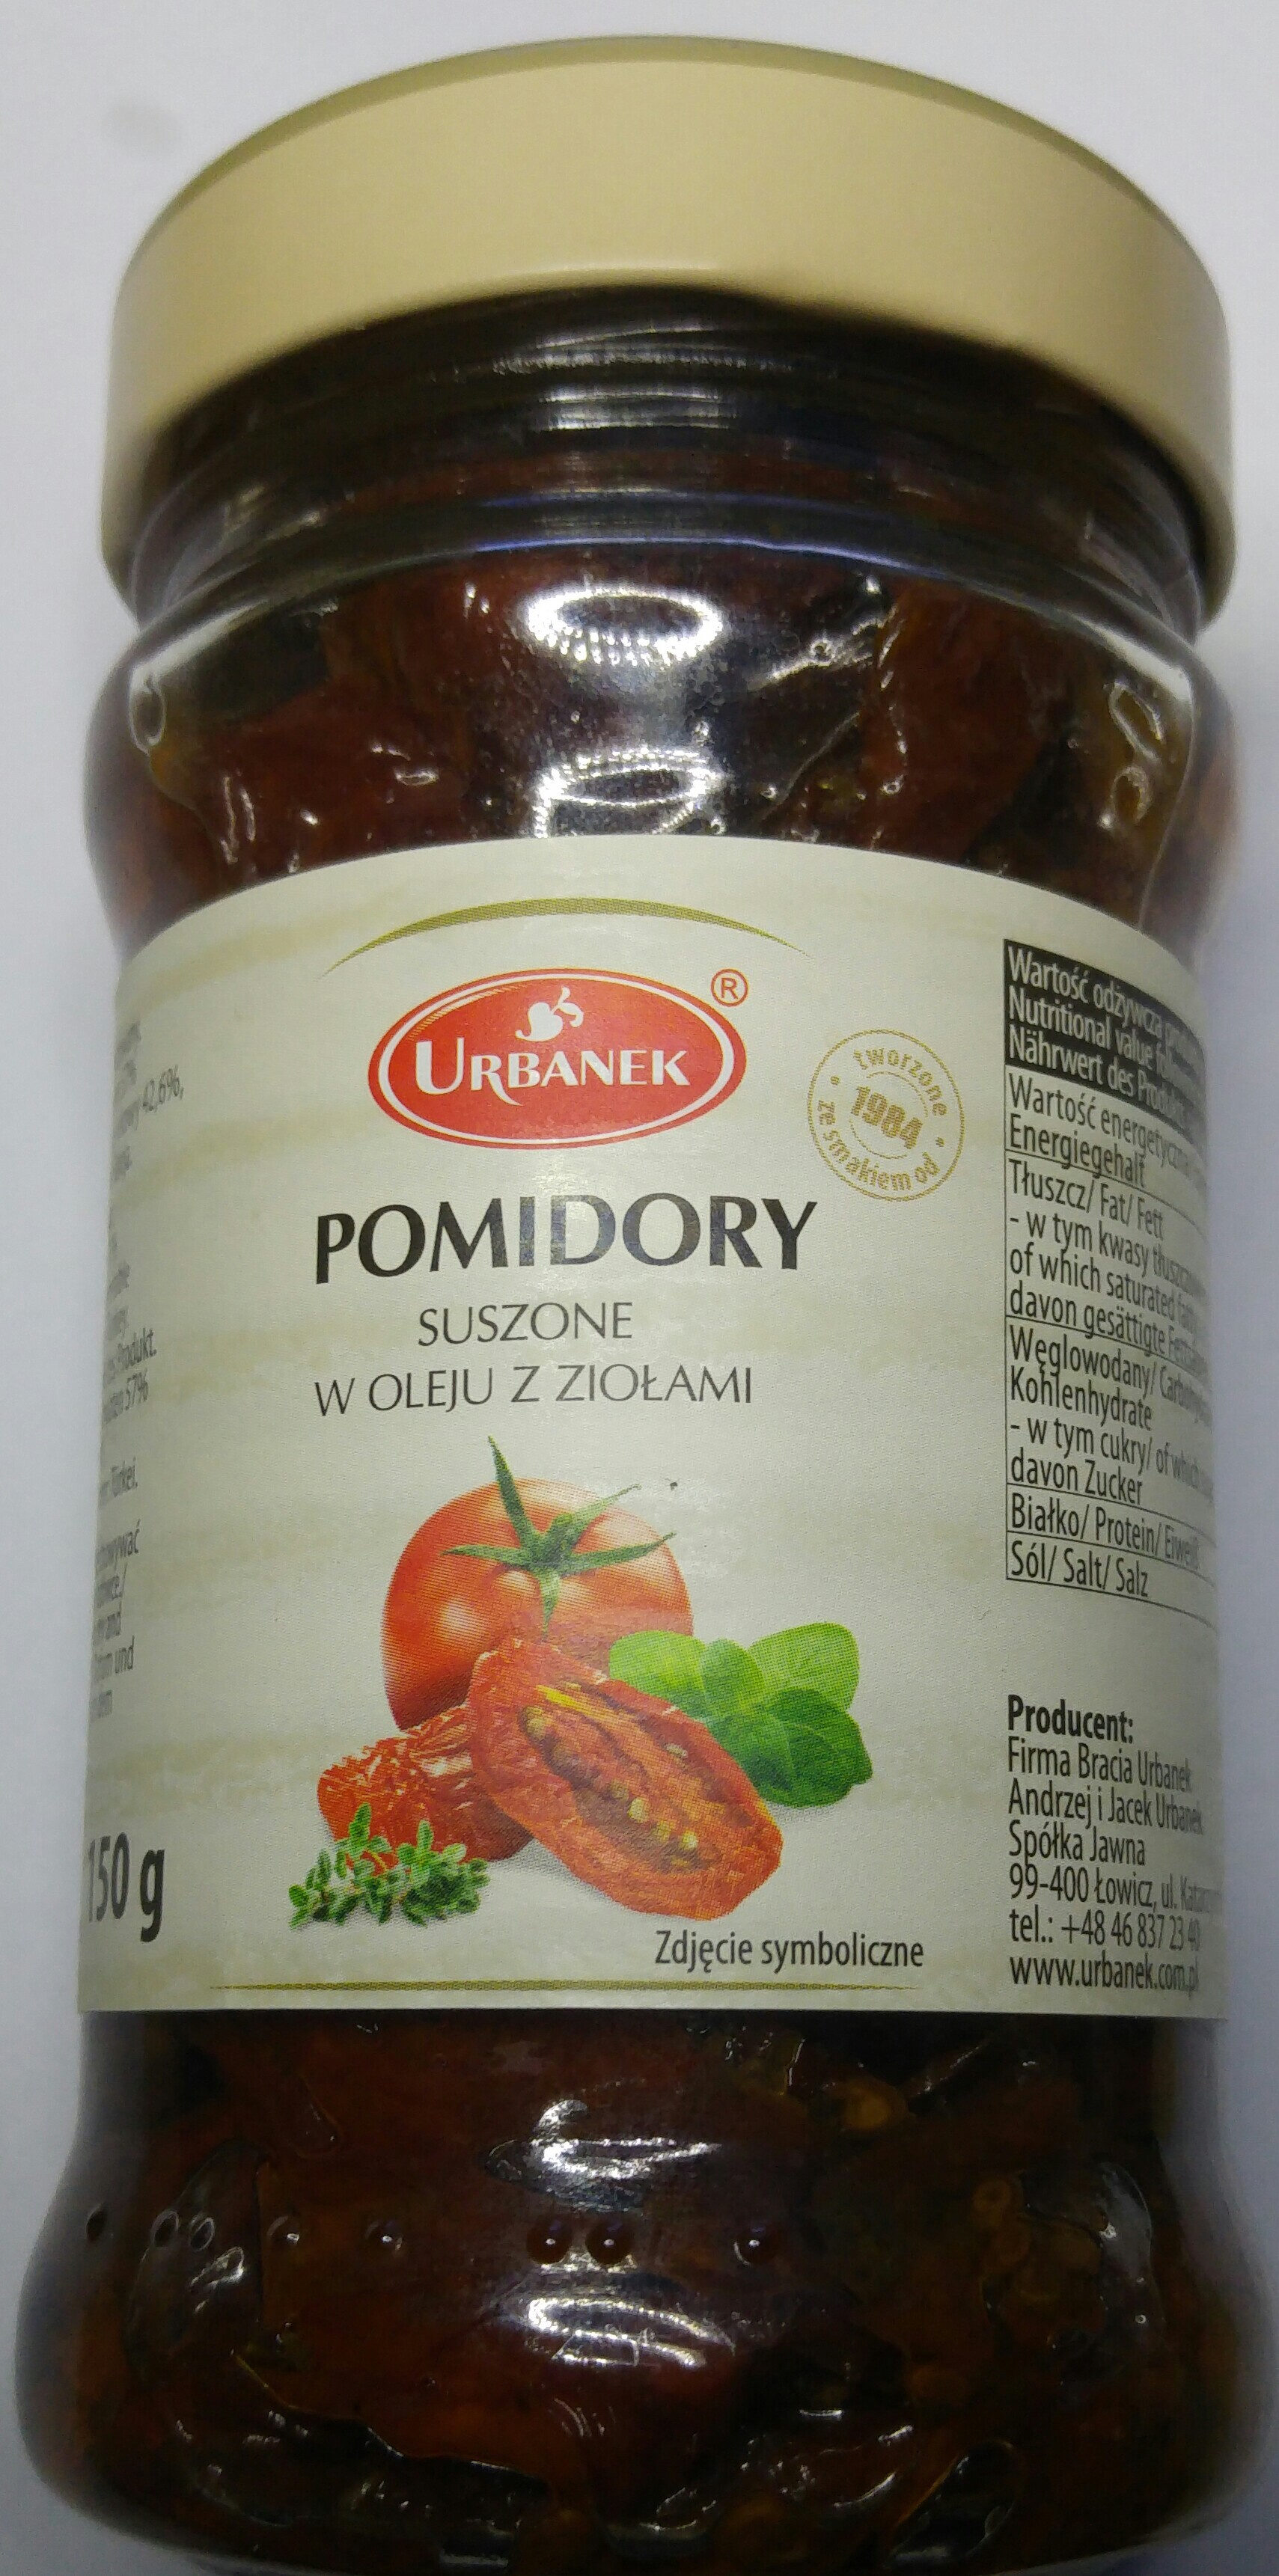 Pomidory suszone w oleju z ziołami. - Produit - pl